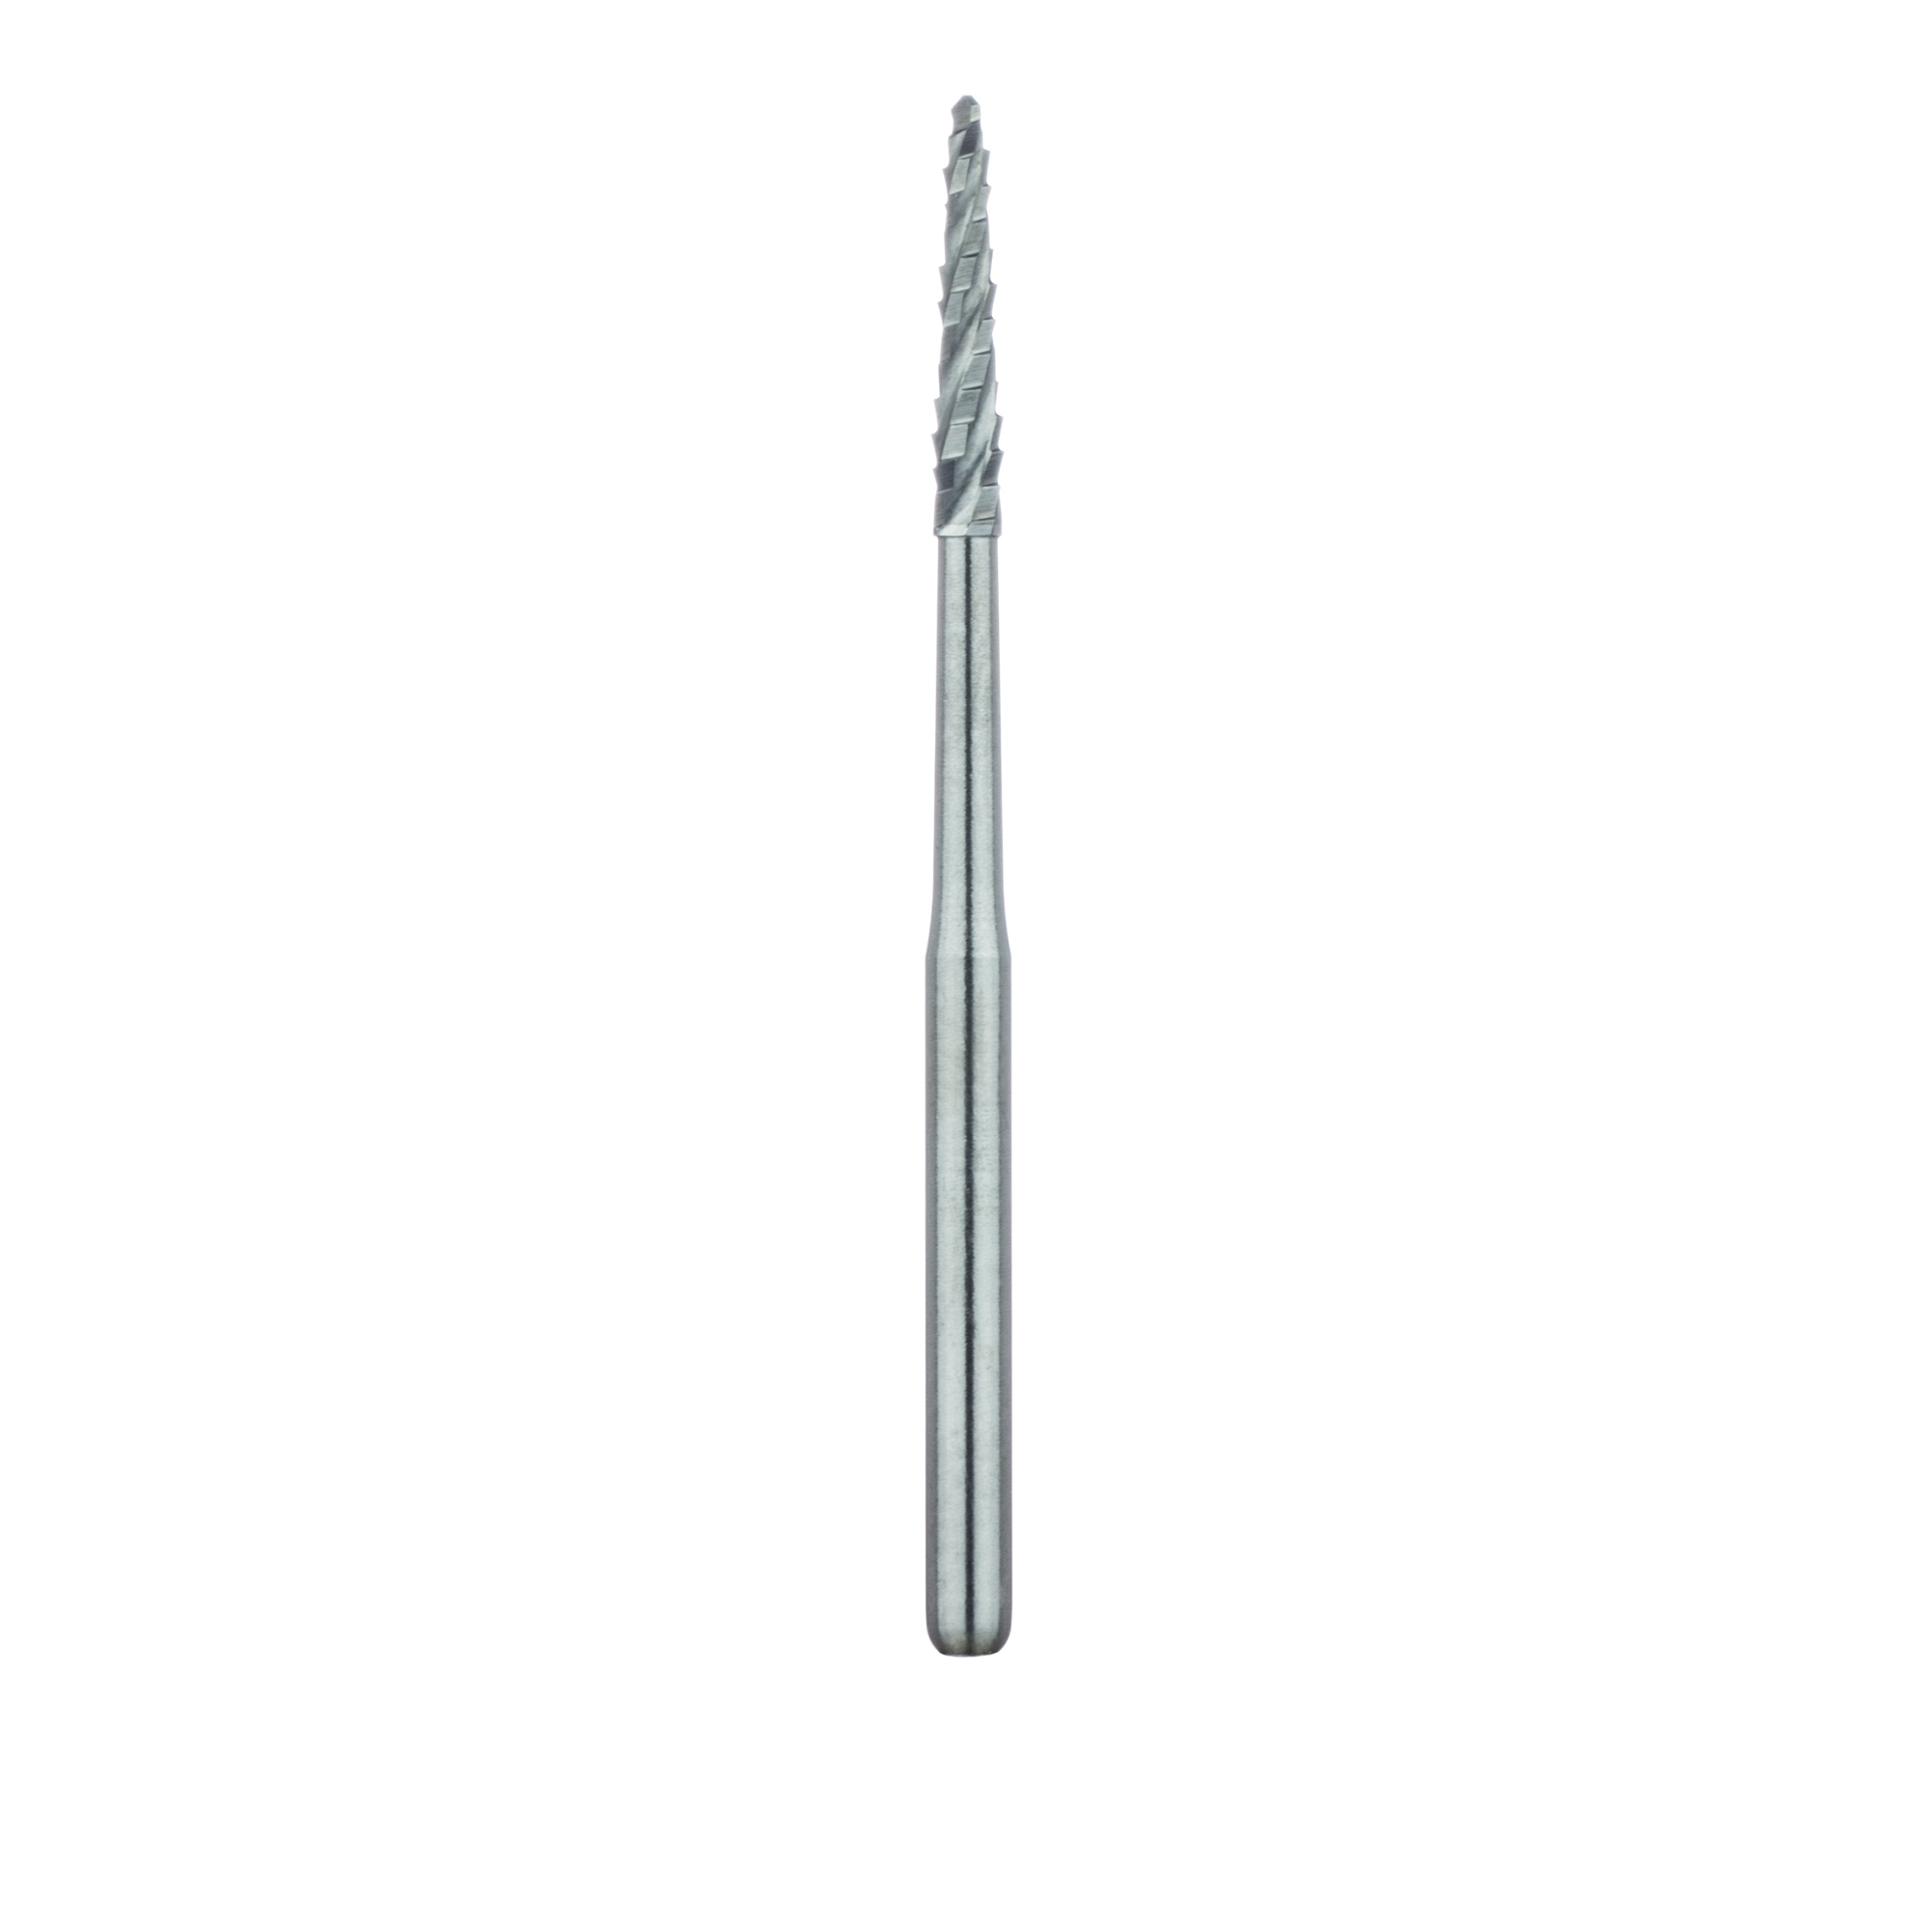 HM162SL-014-FG Surgical Lindemann Carbide Bur, Cross Cut, Long Neck, 1.4mm Ø, Length 8mm, FG